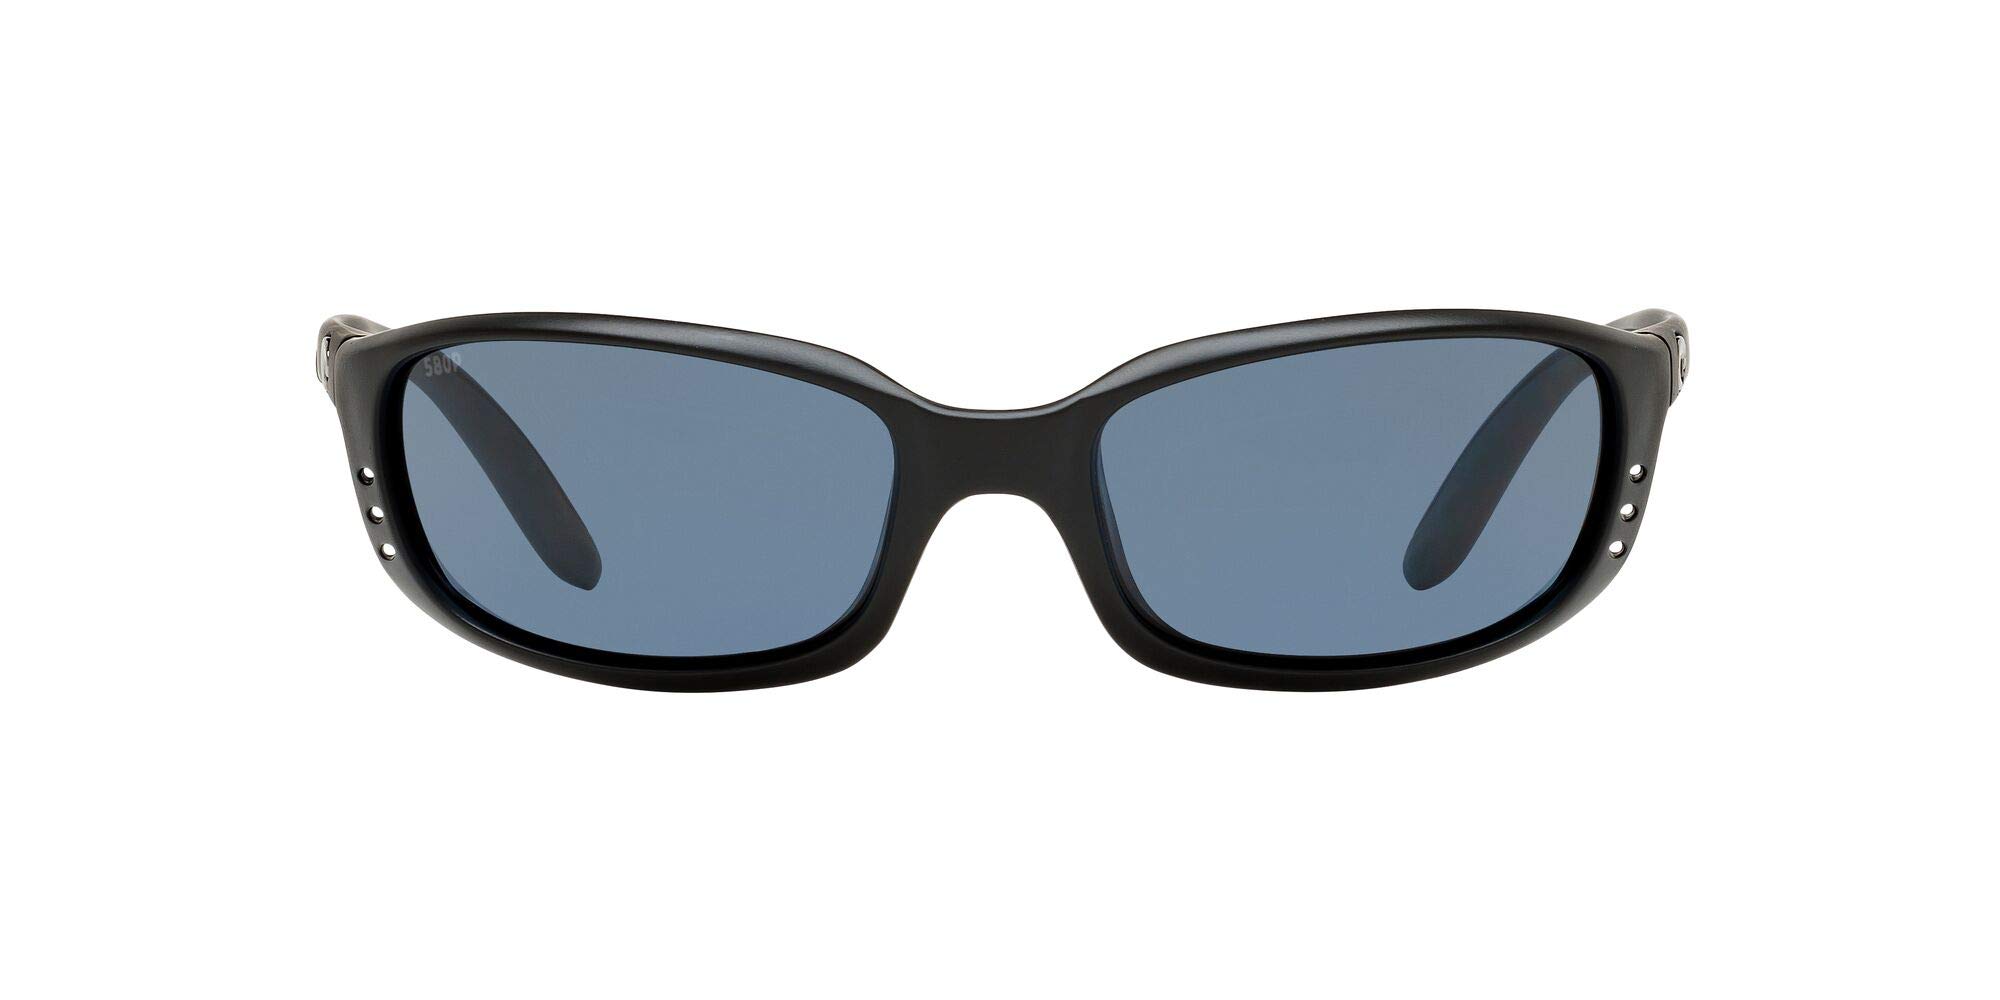 Costa Del Mar Mens Brine Polarized Oval Sunglasses - Matte Black/Grey - 59 mm